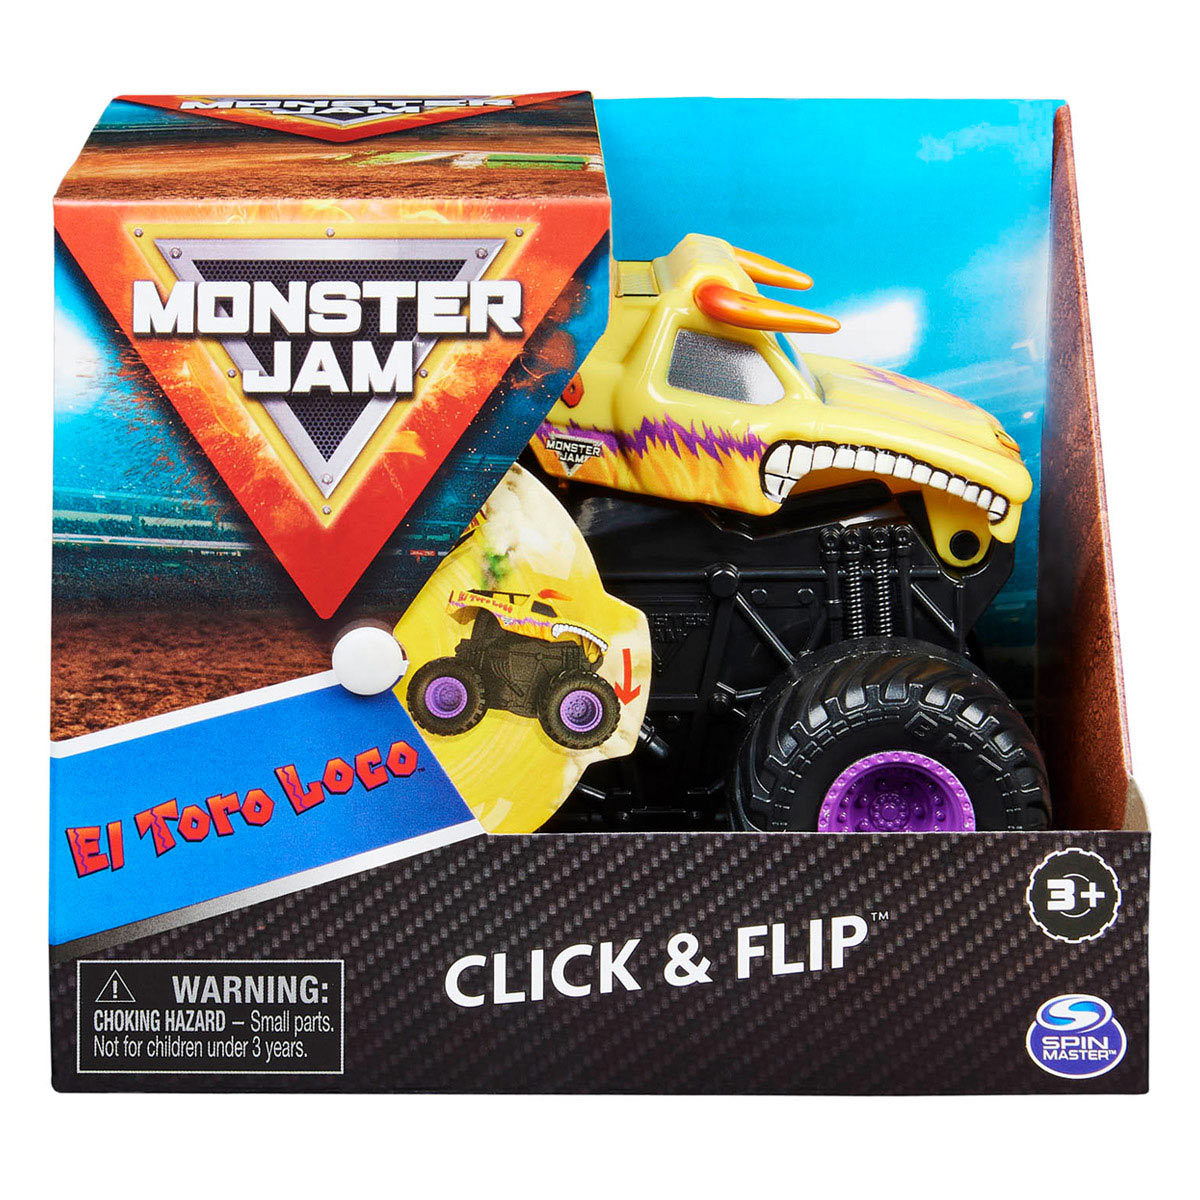 Monster Jam - Escala 1:43 - Click & Flip - El Toro Loco